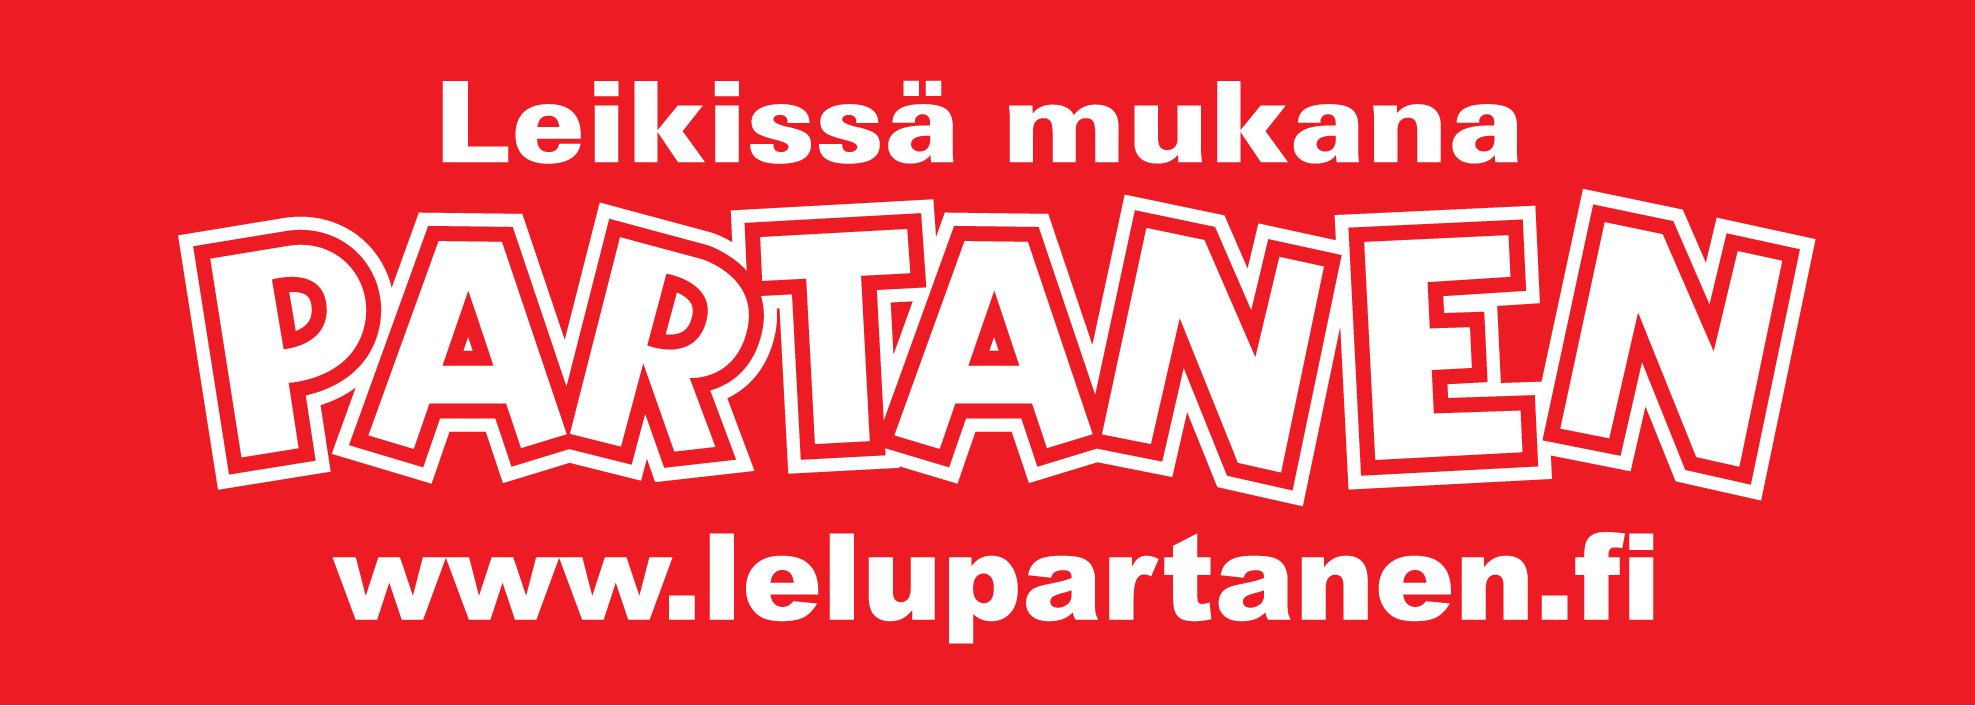 partanen_logo